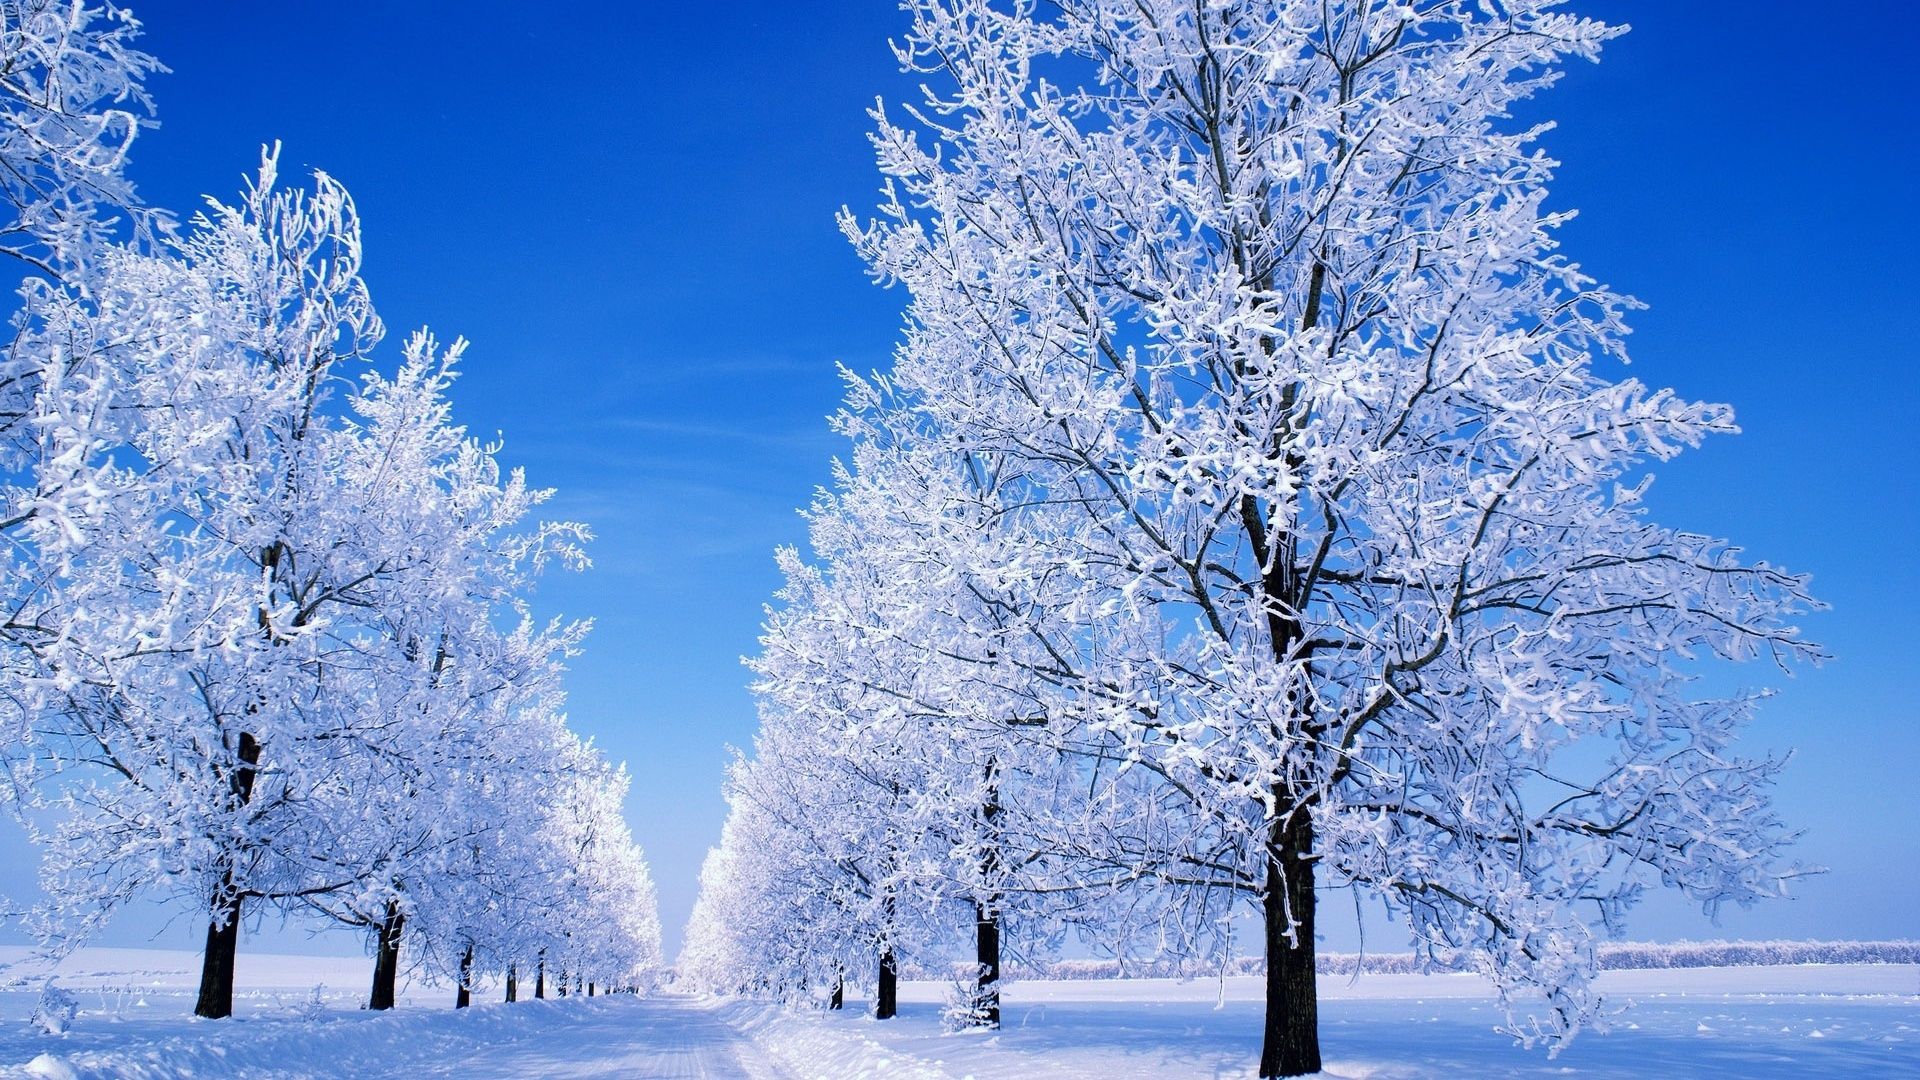 Winter Scenes Desktop Wallpaper, Winter Scenes Backgrounds Cool